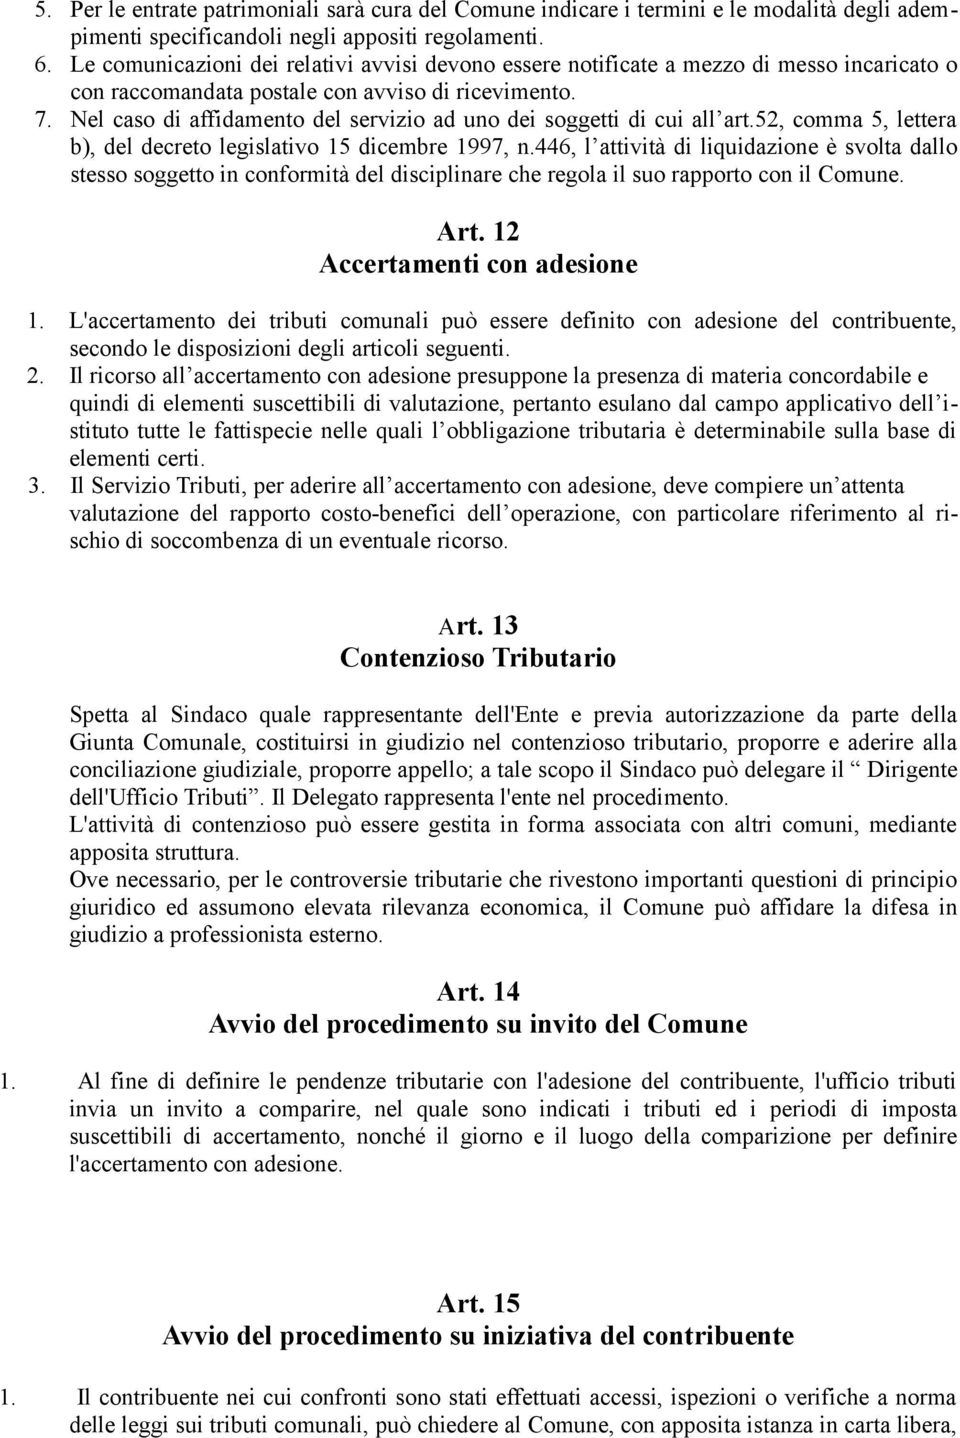 Nel caso di affidamento del servizio ad uno dei soggetti di cui all art.52, comma 5, lettera b), del decreto legislativo 15 dicembre 1997, n.